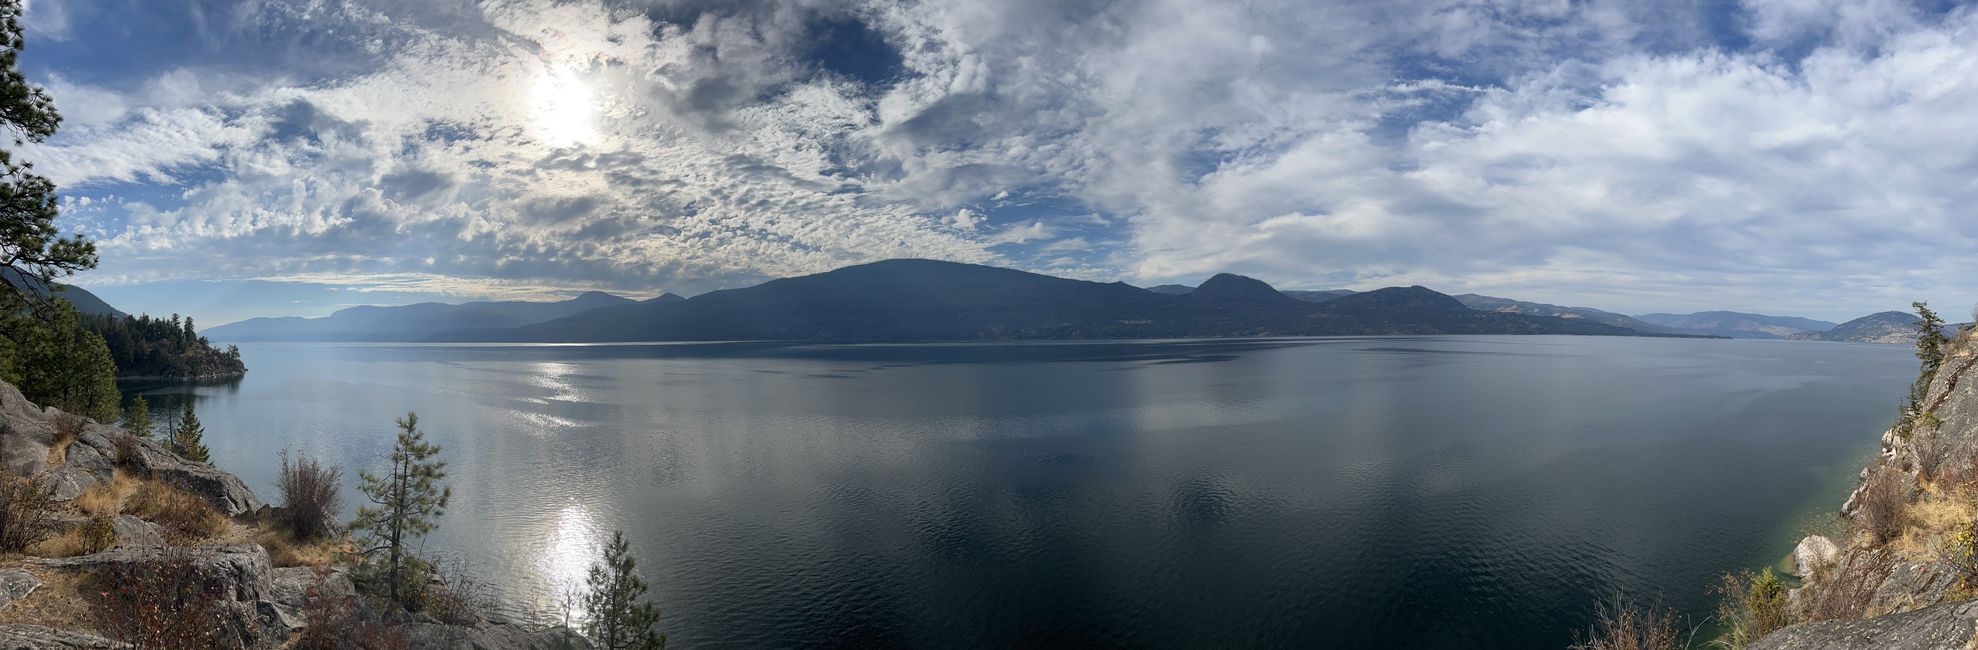 Tag 3 Okanagan Lake